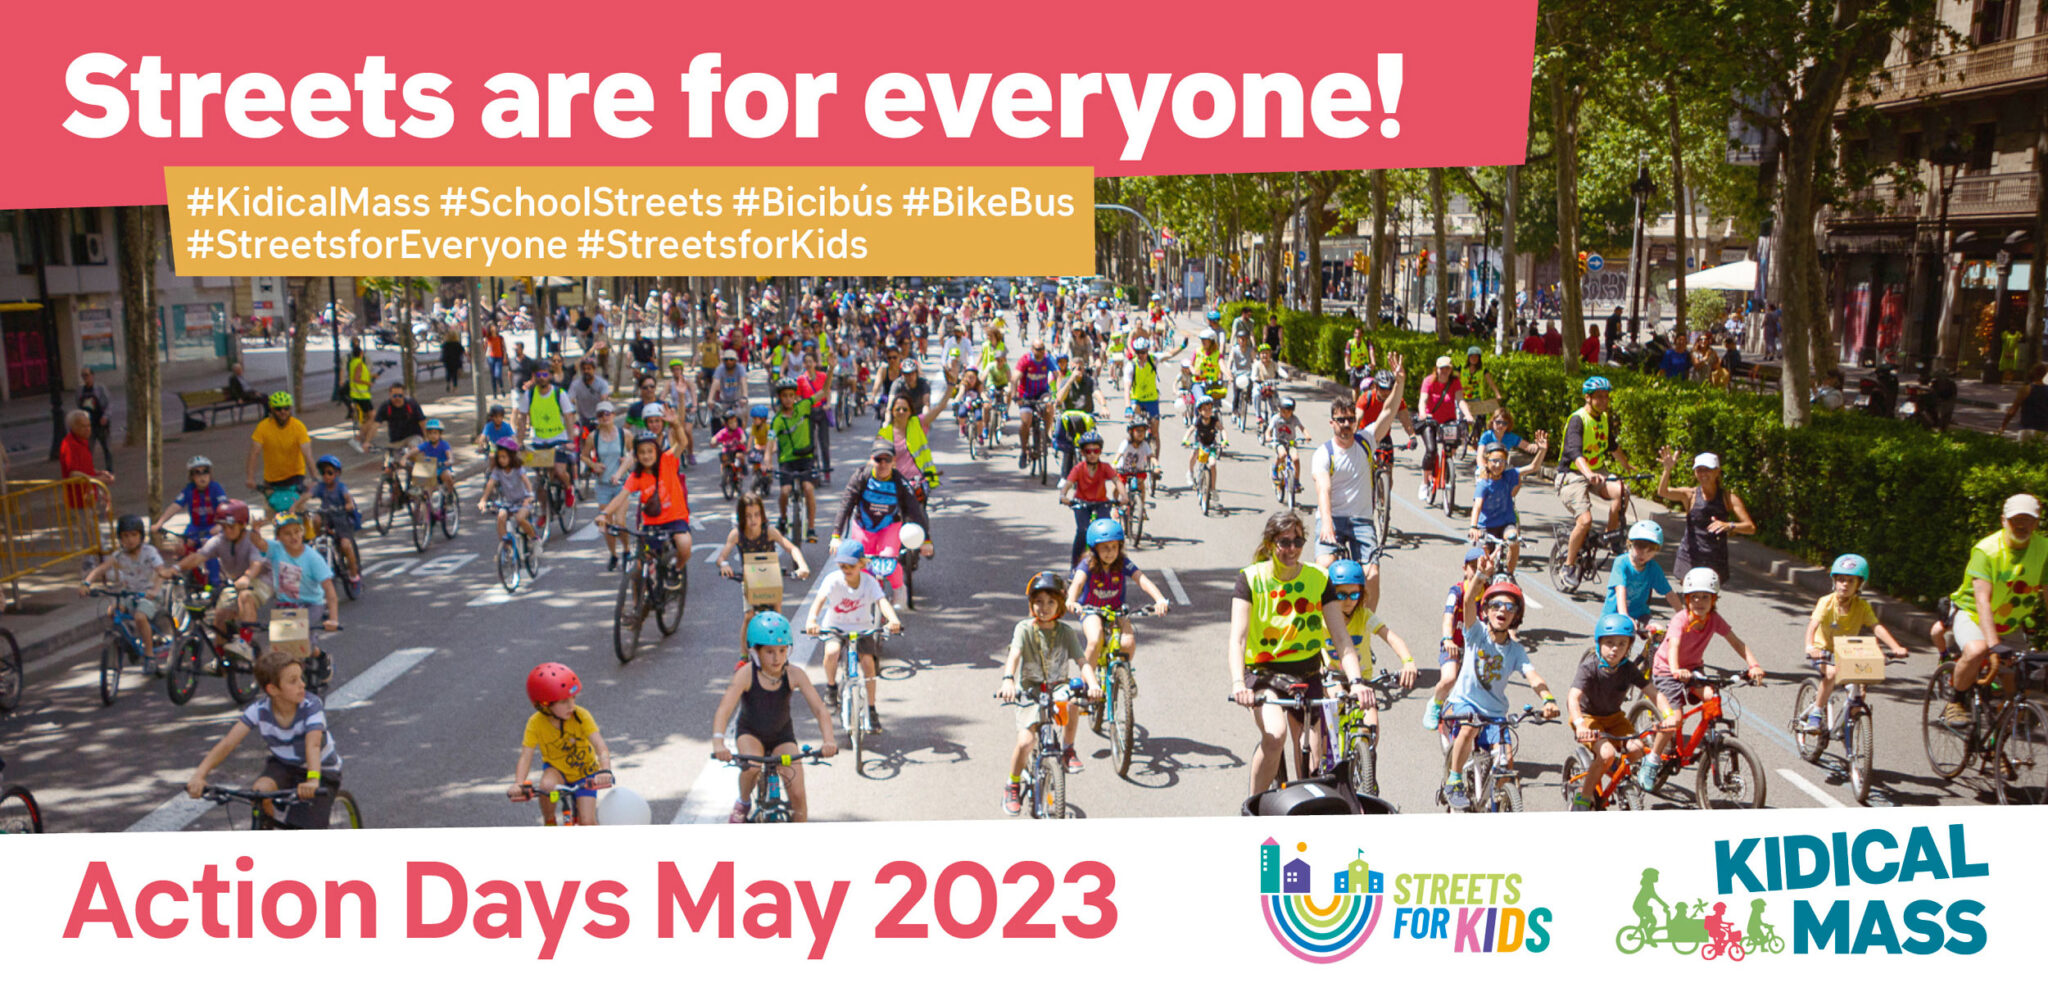 Θεσσαλονίκη: Ποδηλατοβόλτα για παιδιά την Κυριακή 7 Μαΐου